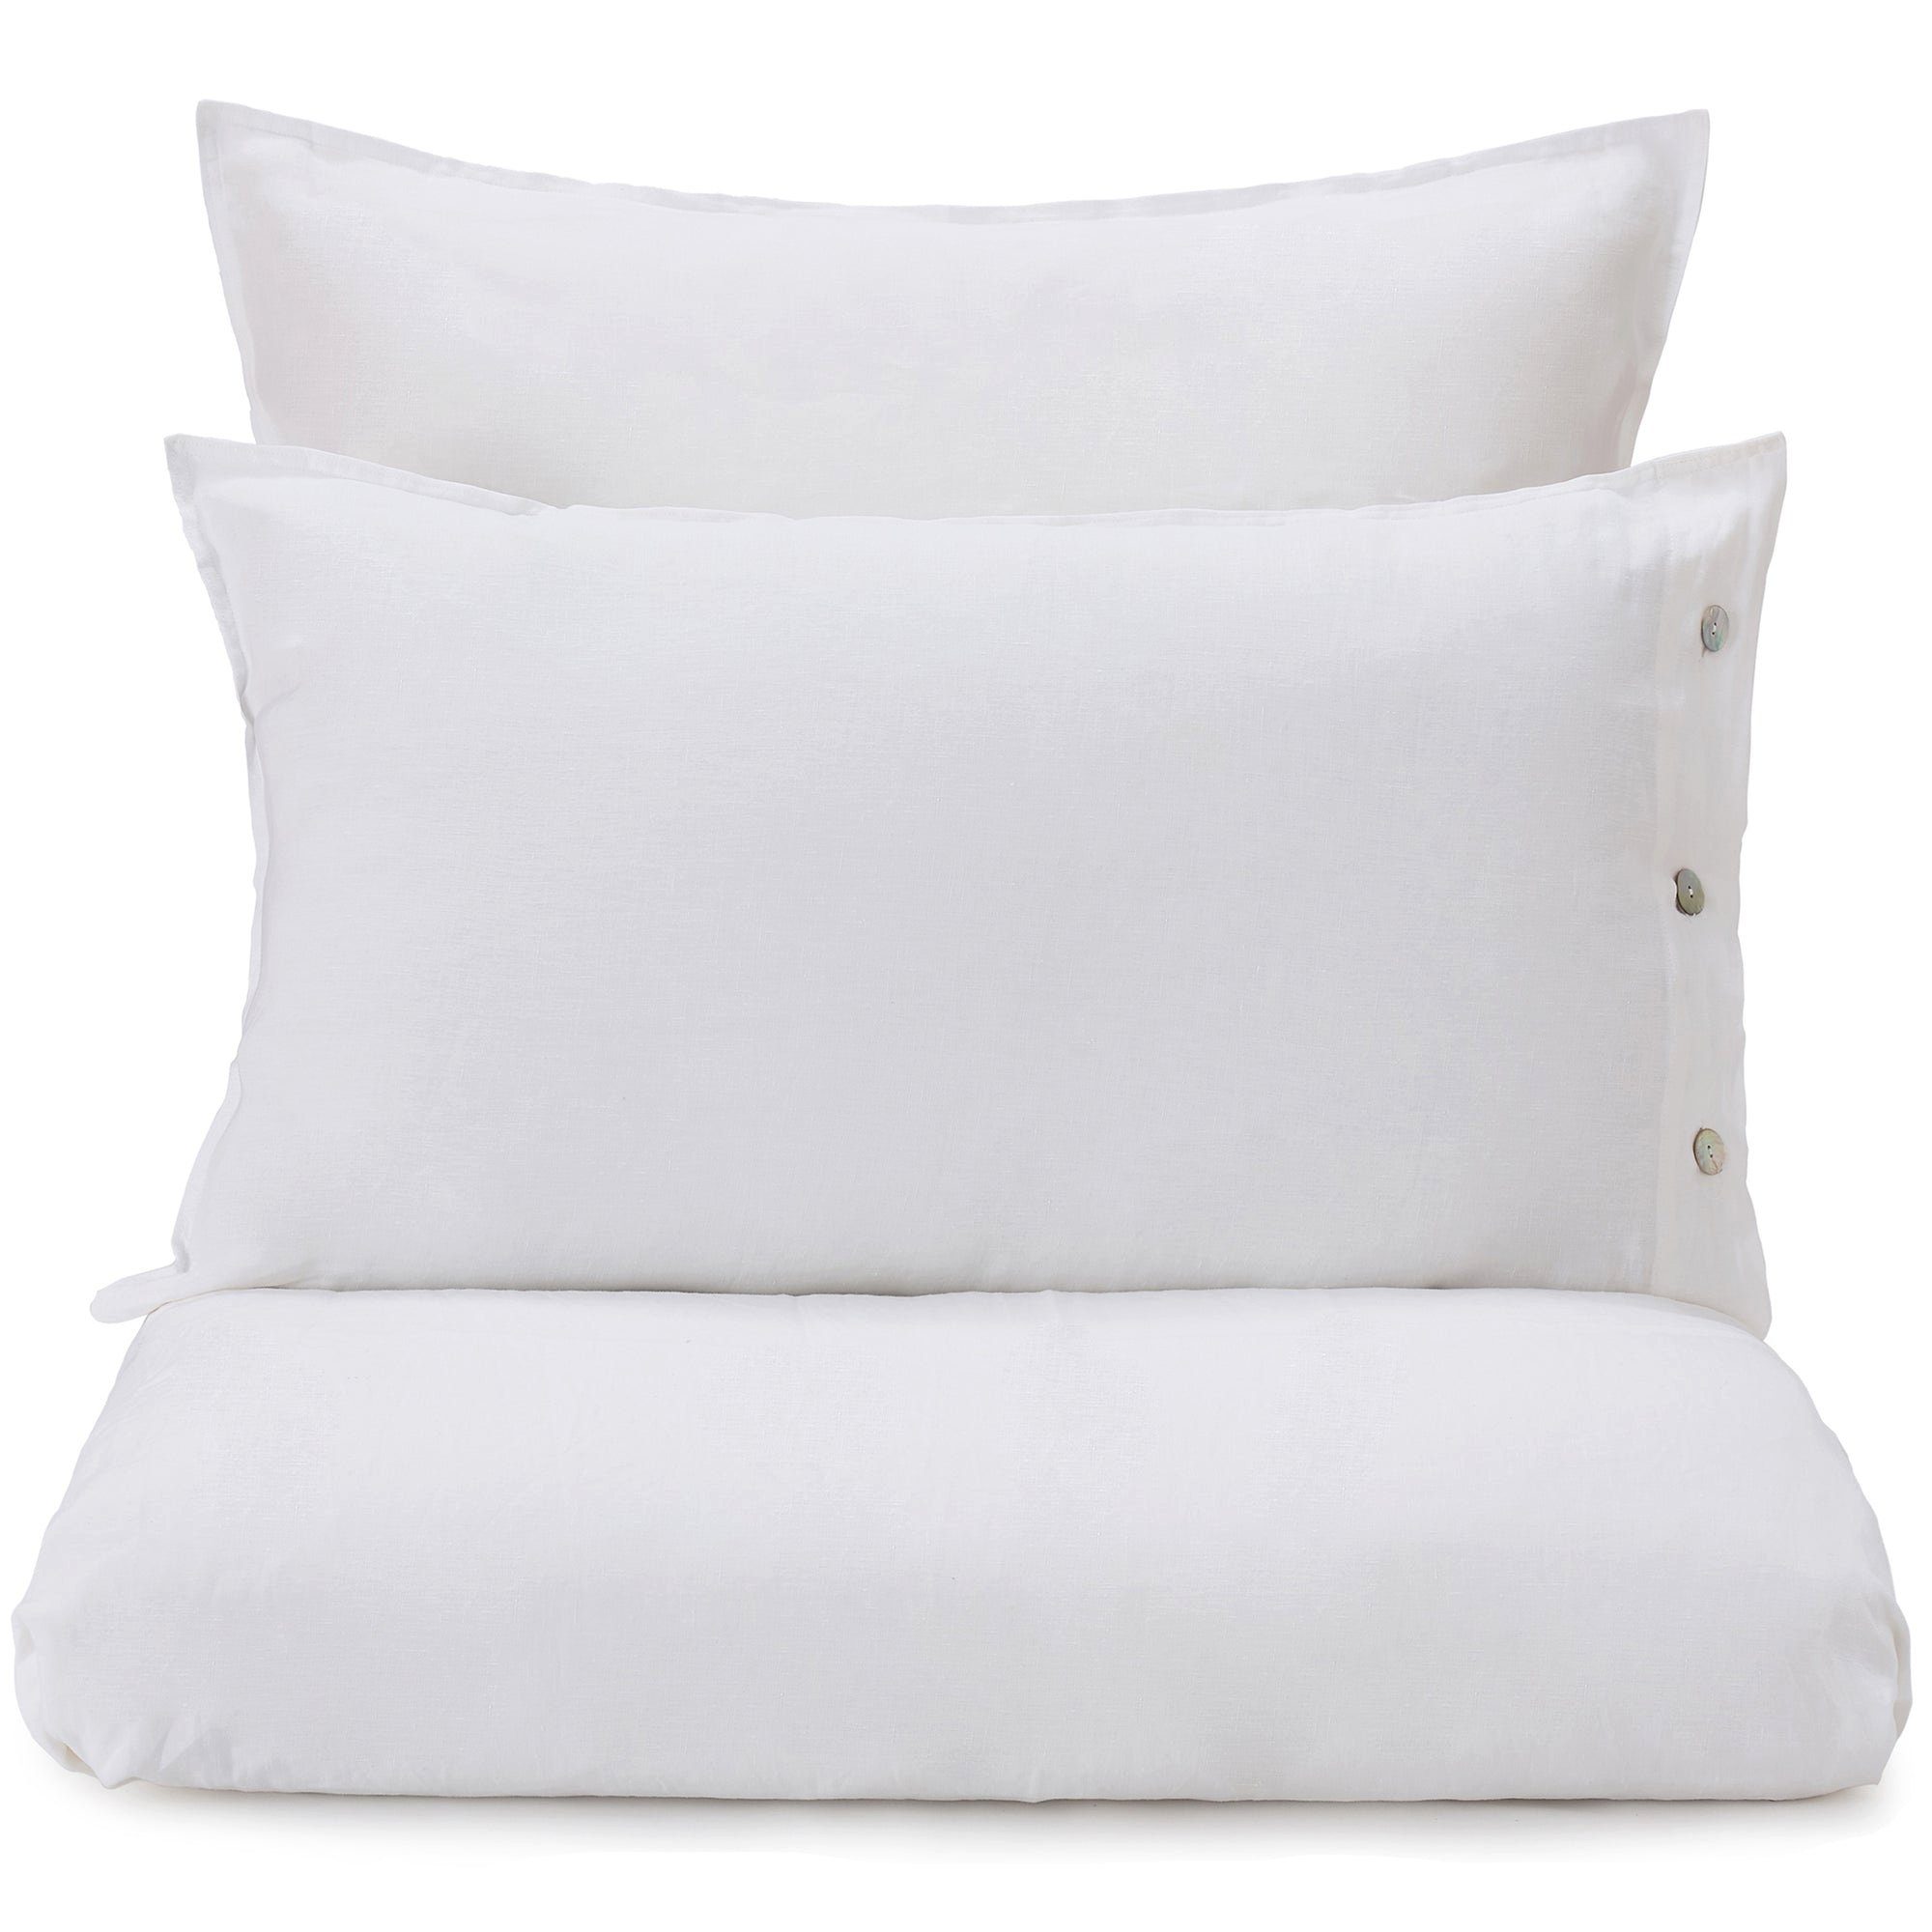 Bettbezug Bellvis Bettdeckenbezug aus 100% Leinen - 155x200 cm, Weiß, Urbanara (1 St), Schlicht & sanft strukturiert, mit Perlmuttknöpfen, aus reinem Leinen